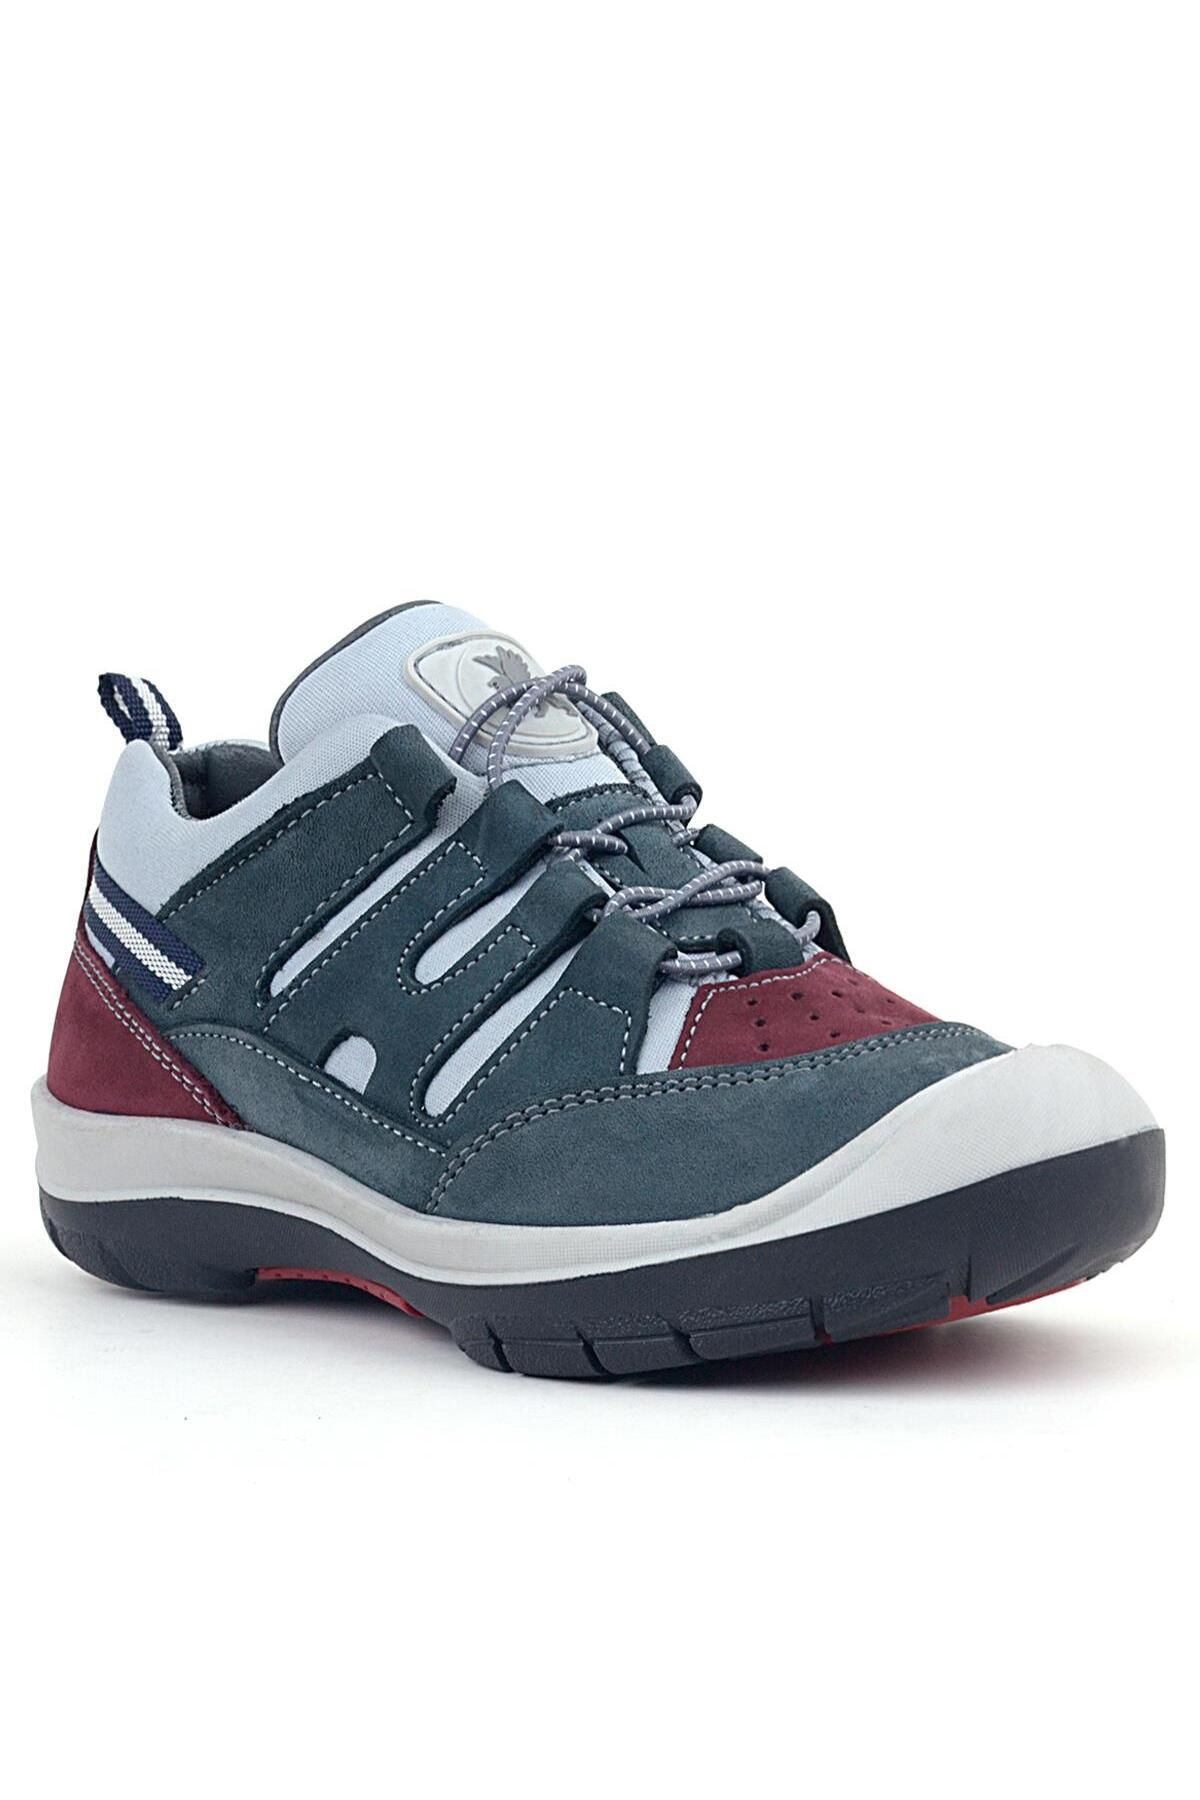 Rakerplus Hakiki Deri Gri Bordo Lastik Bağcıklı Çocuk Outdoor Ayakkabı